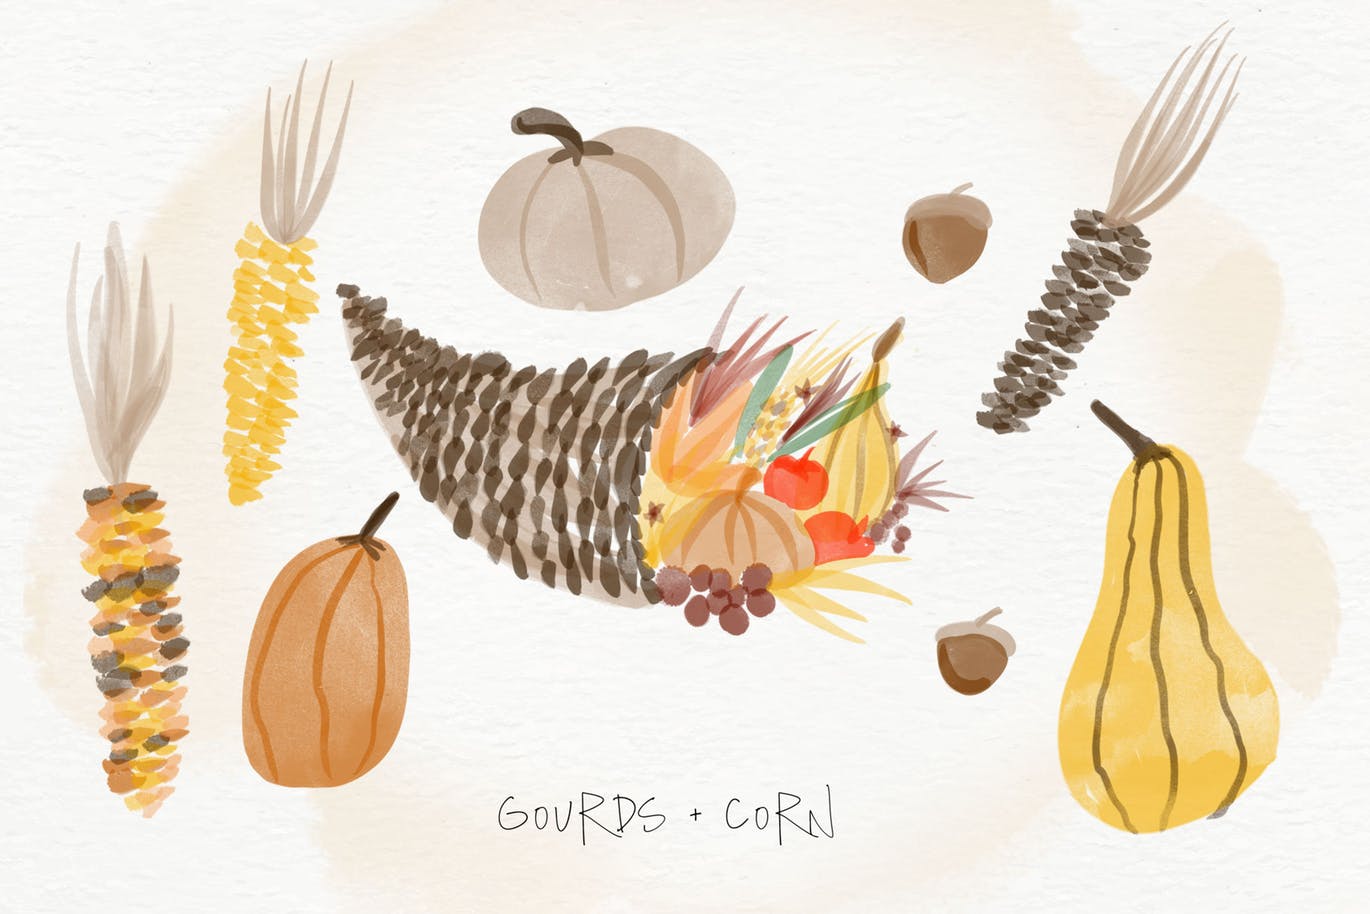 秋天主题水彩手绘图案设计素材包 Autumn Watercolor Kit插图(2)